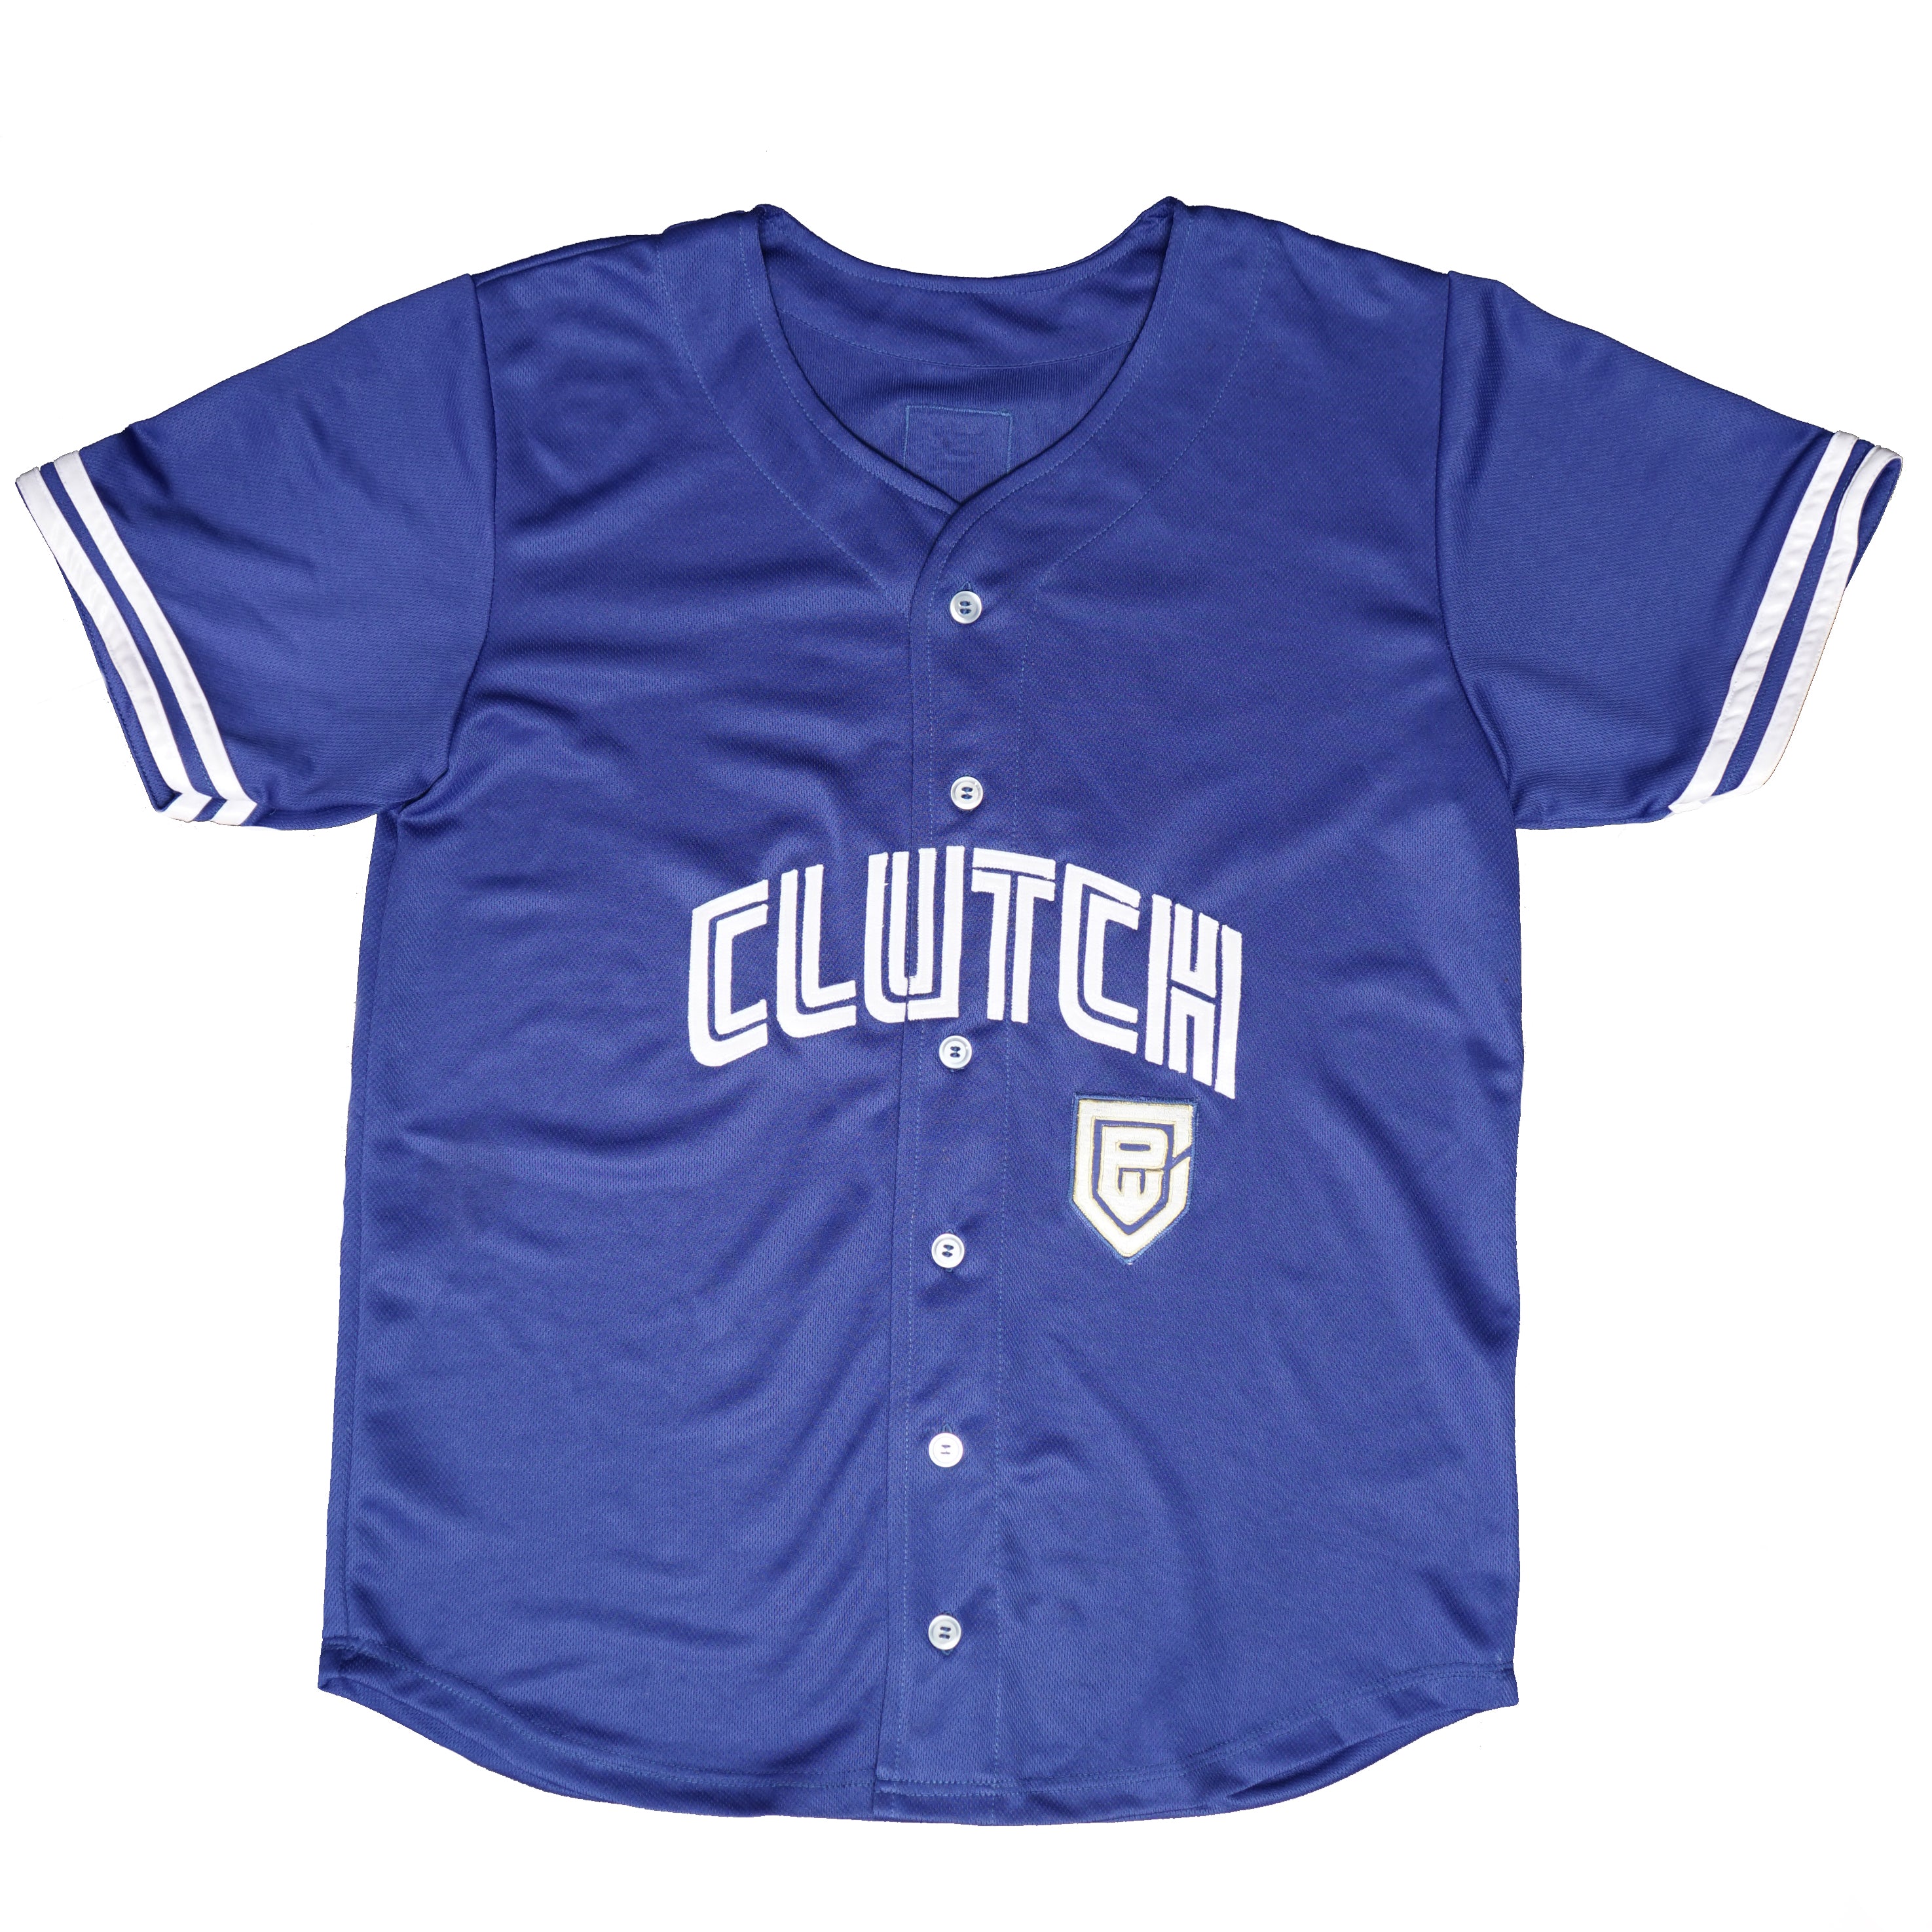 Blue Chip Stitch - Baseball